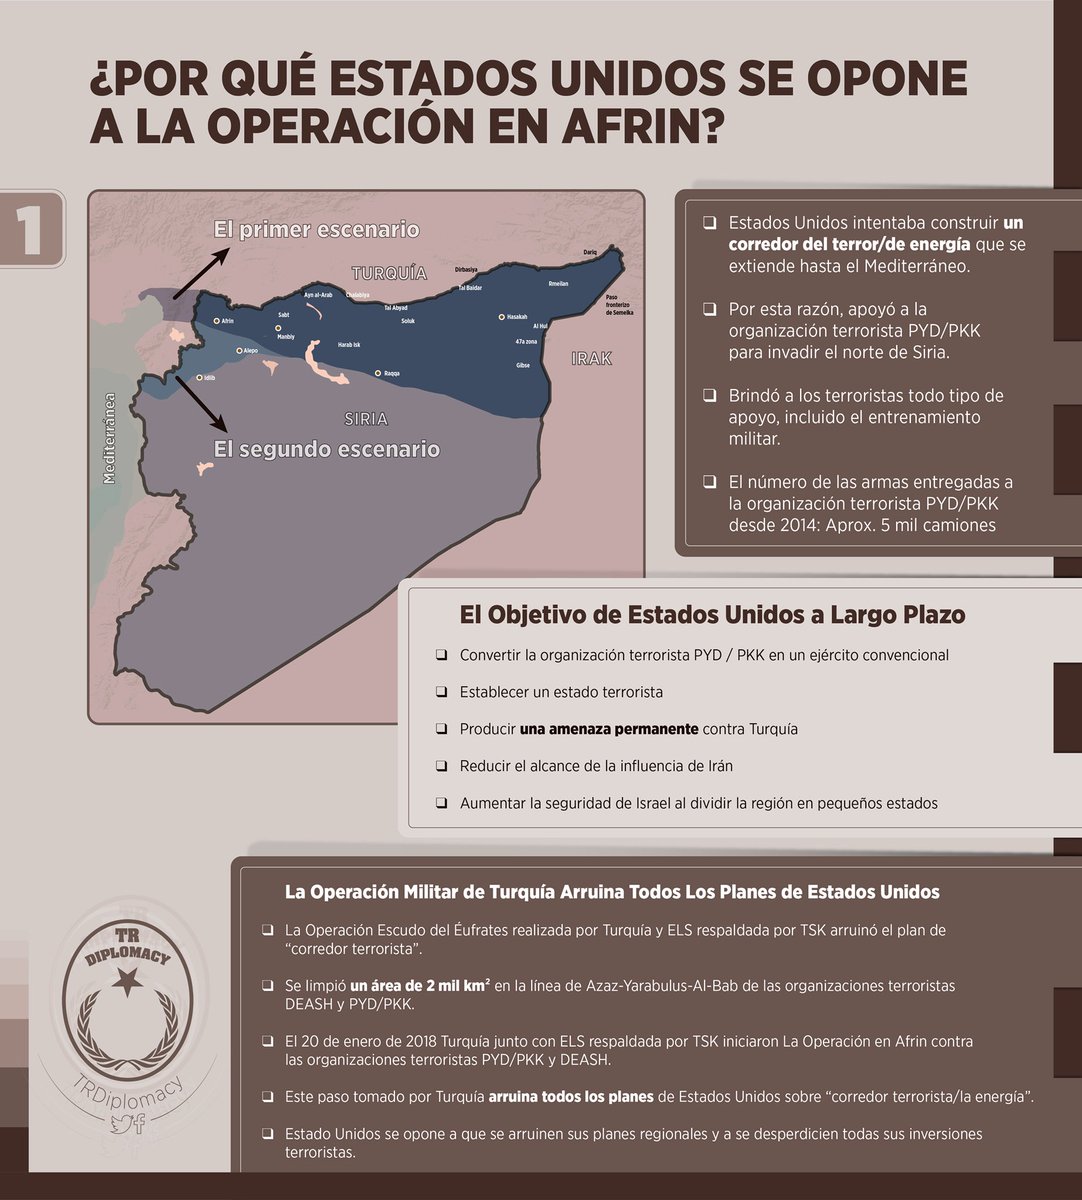 ¿Por qué Estados Unidos se opone a la Operación en Afrin?